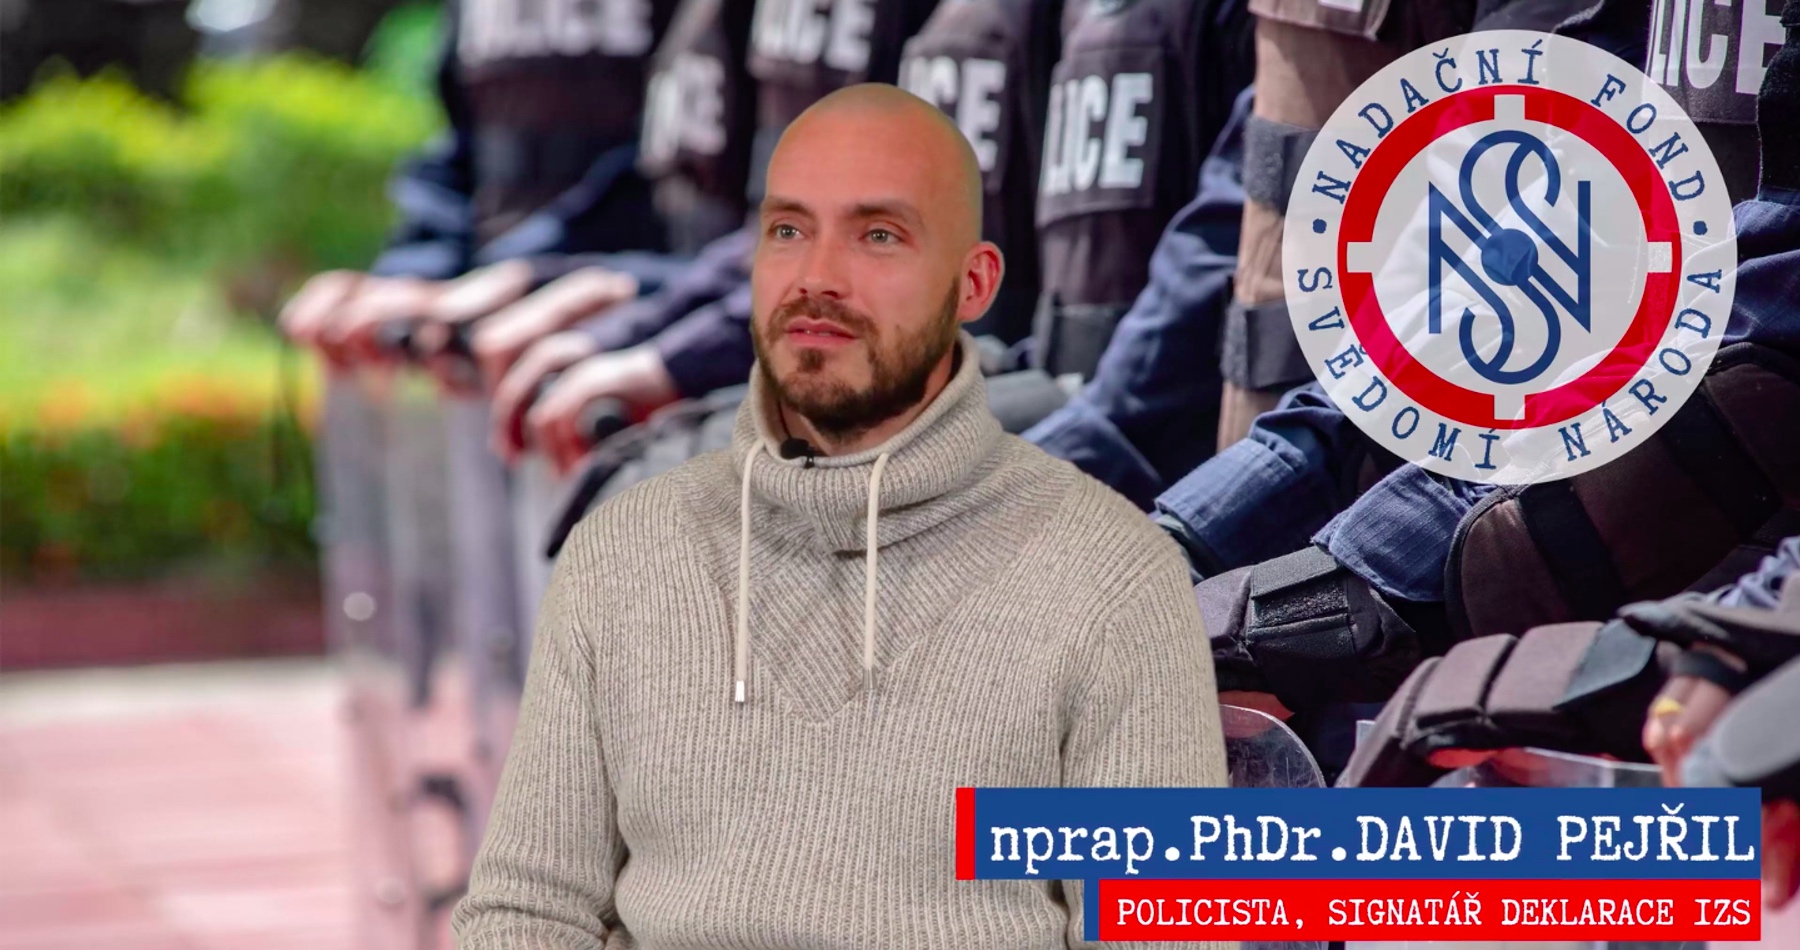 VIDEO: Rozhovor s policistou nprap. PhDr. Davidem Pejřilem o odporu proti nátlaku a jednotě s občany